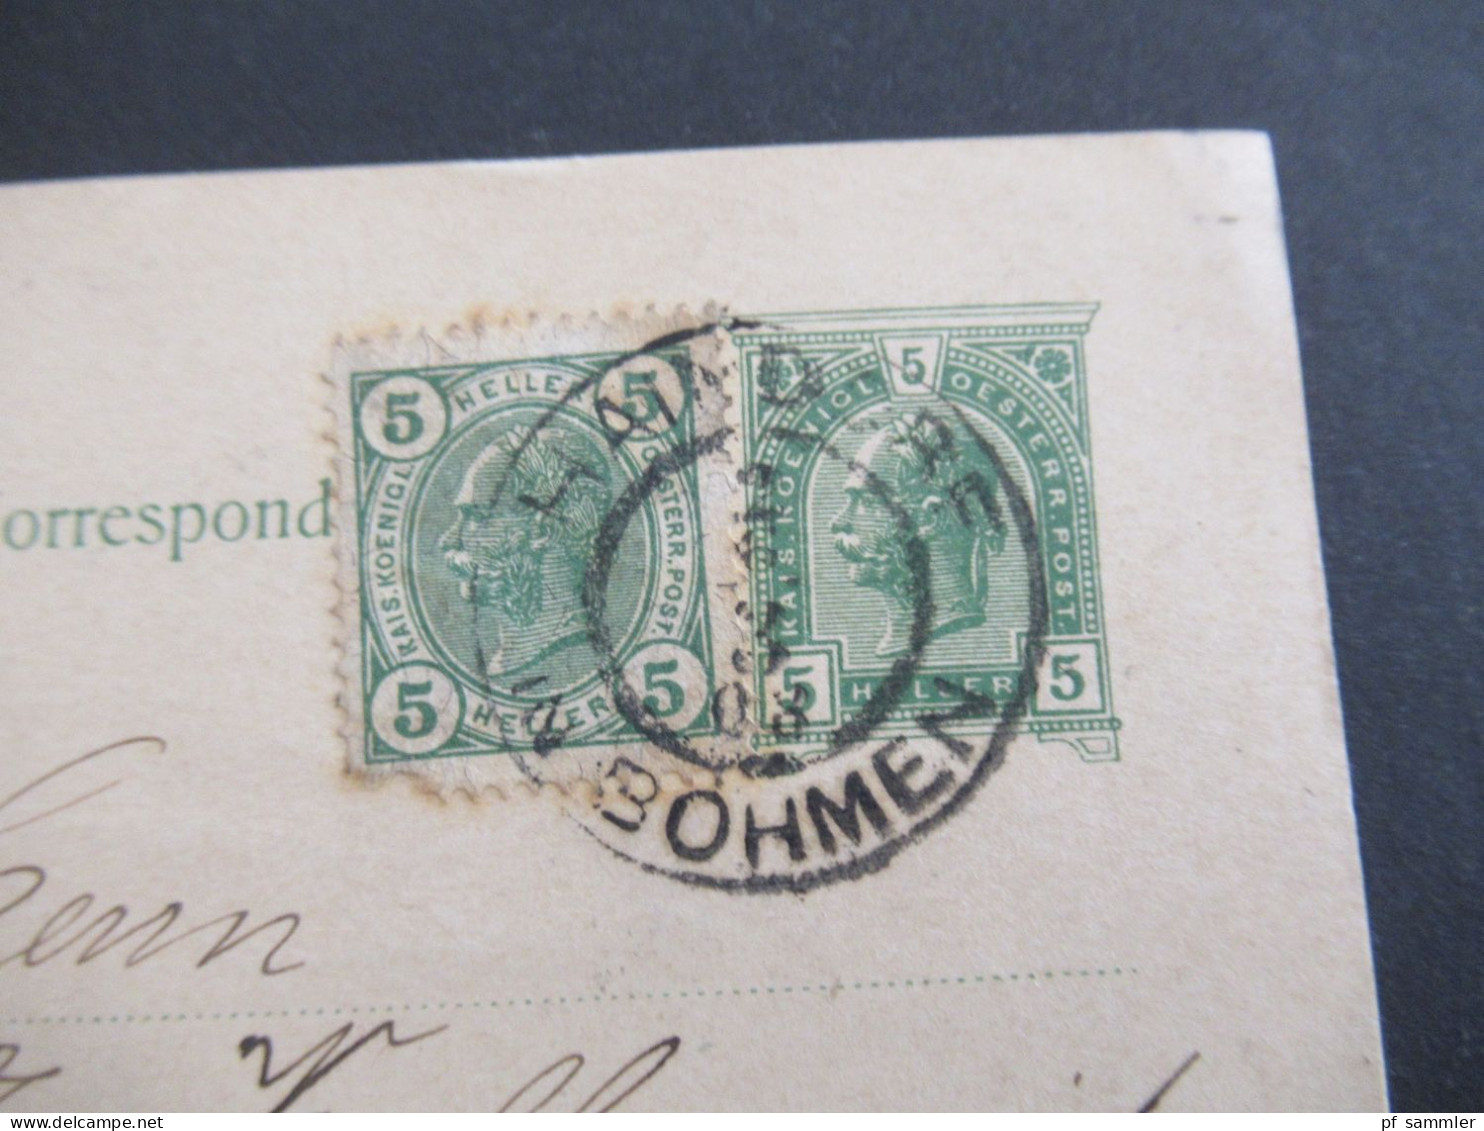 Österreich / Tschechien 1908 GA 5 Heller Mit Zusatzfrankatur Haindorf Deutsch Böhmen - St. Gallen In Der Schweiz / Ausla - Postcards